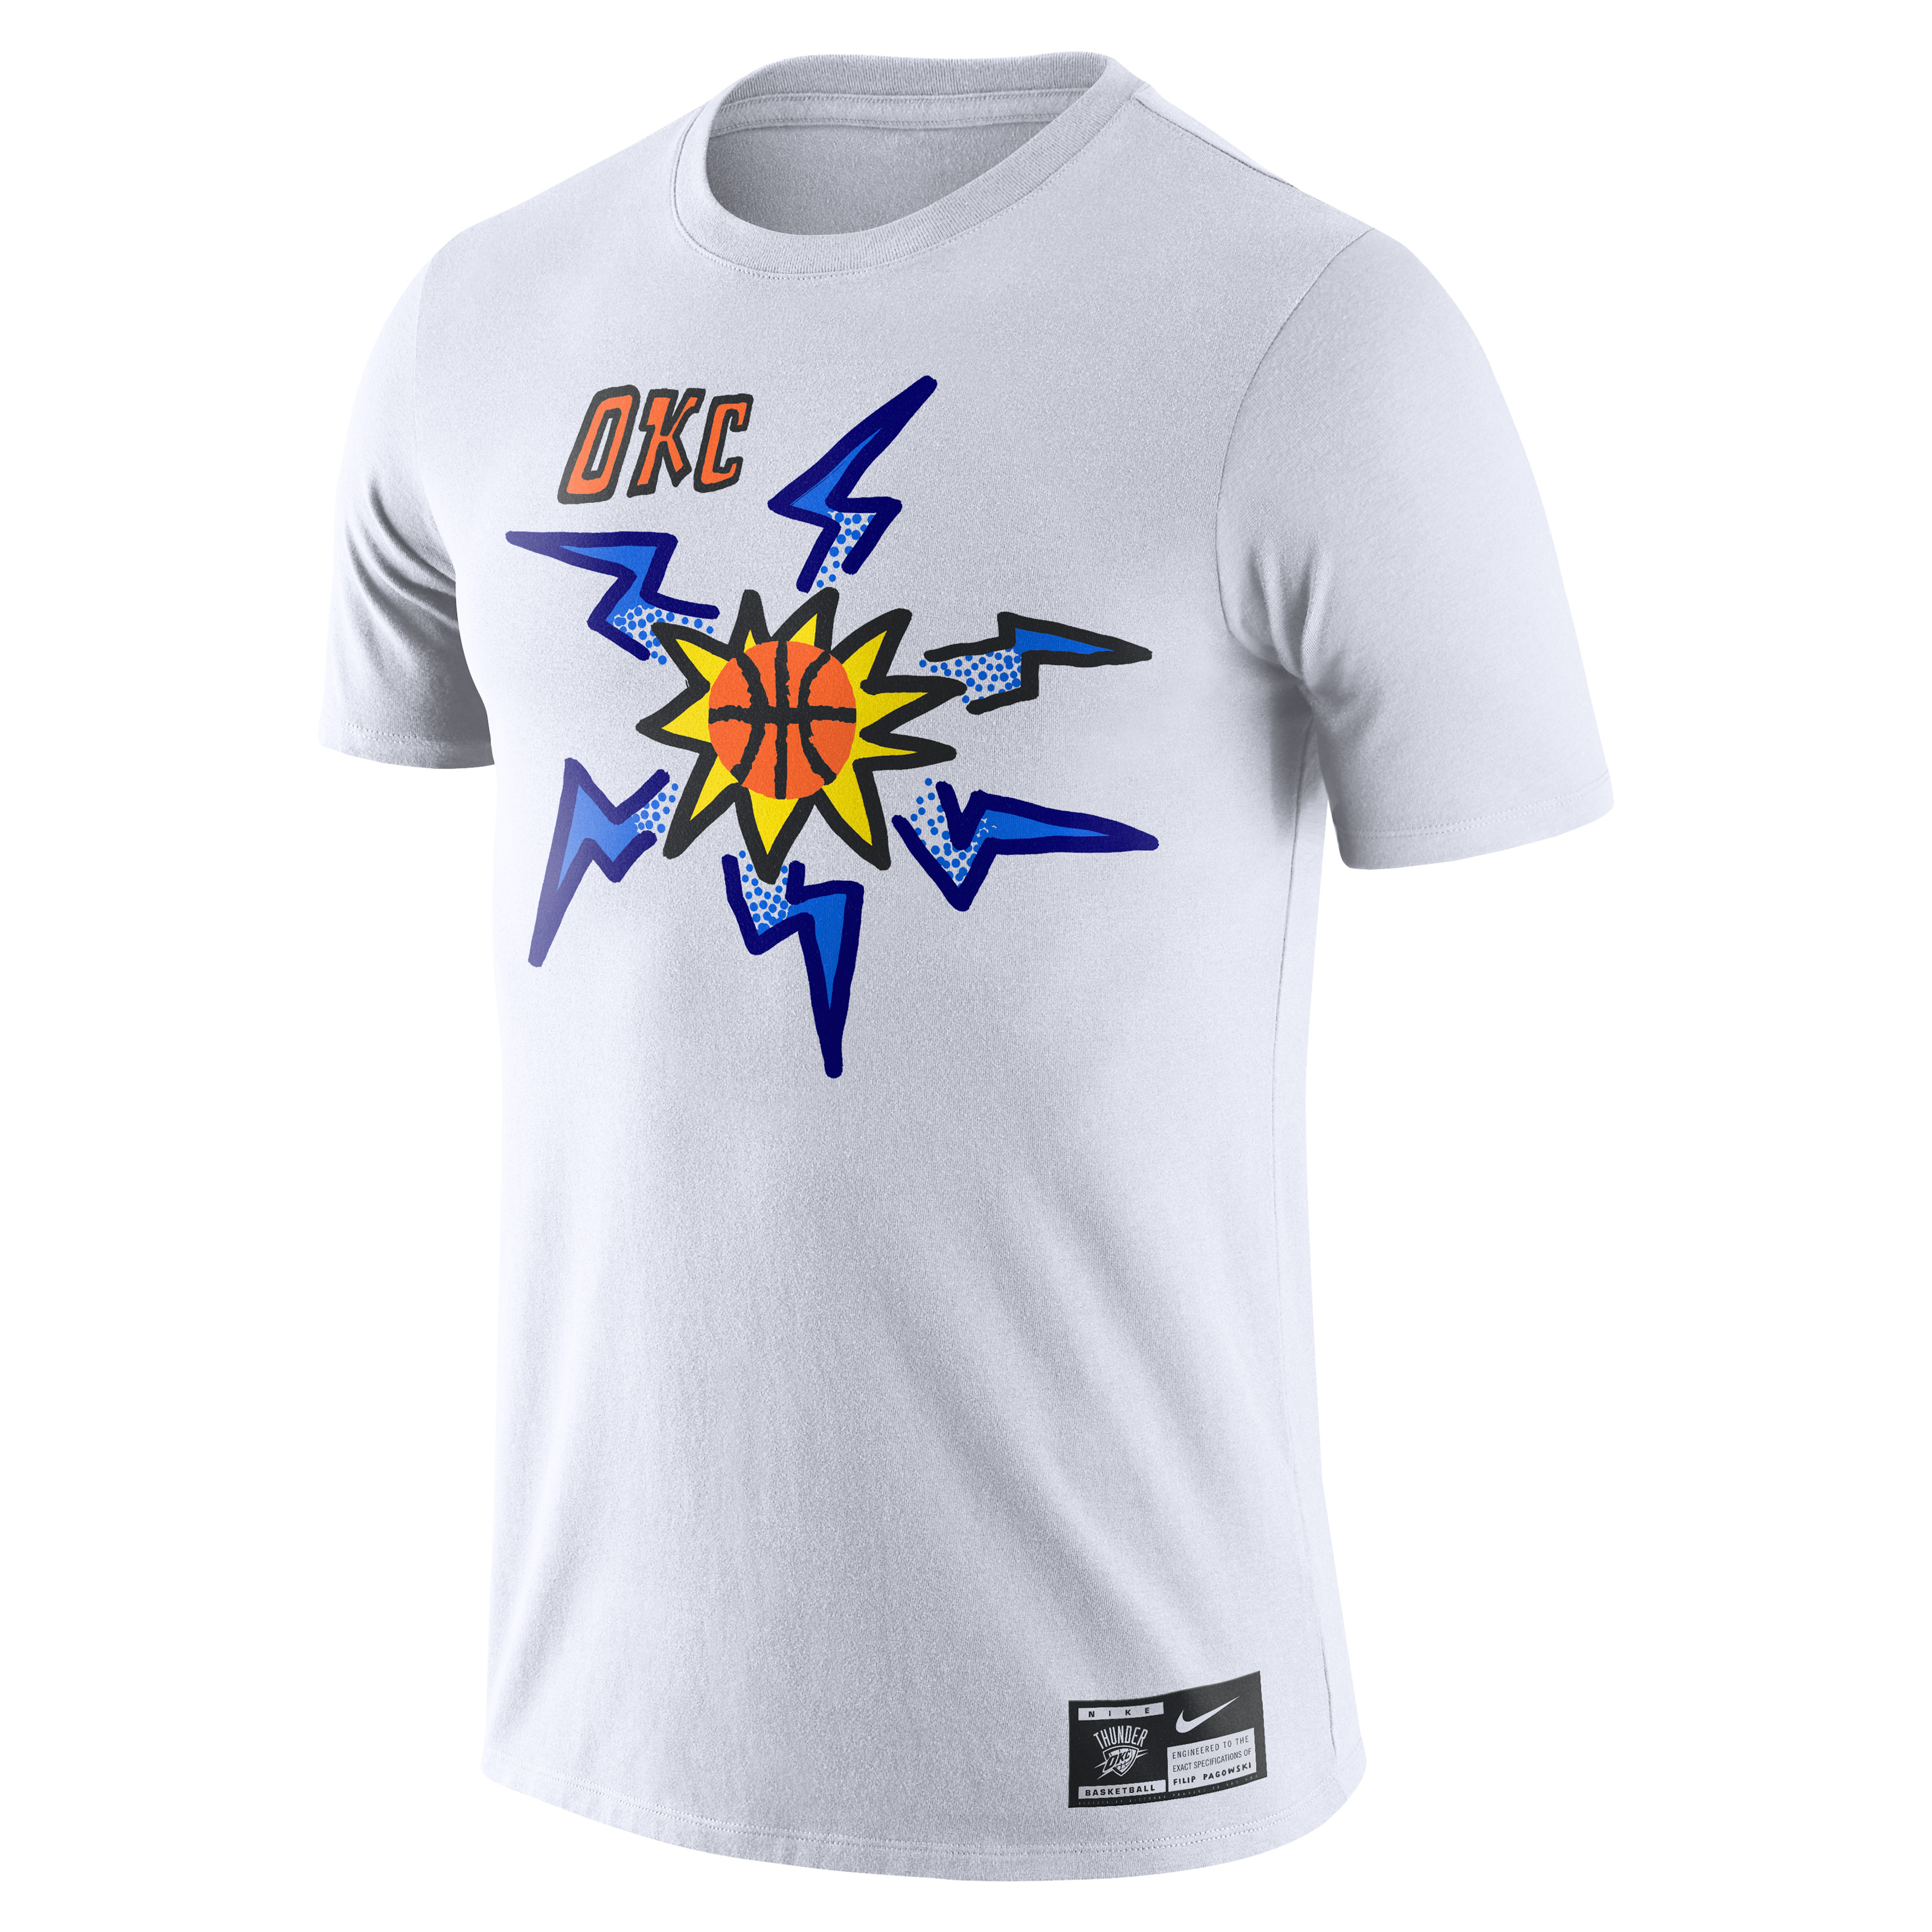 Filip Pagowski Nike T shirt &#x27;OKC Thunder&#x27;